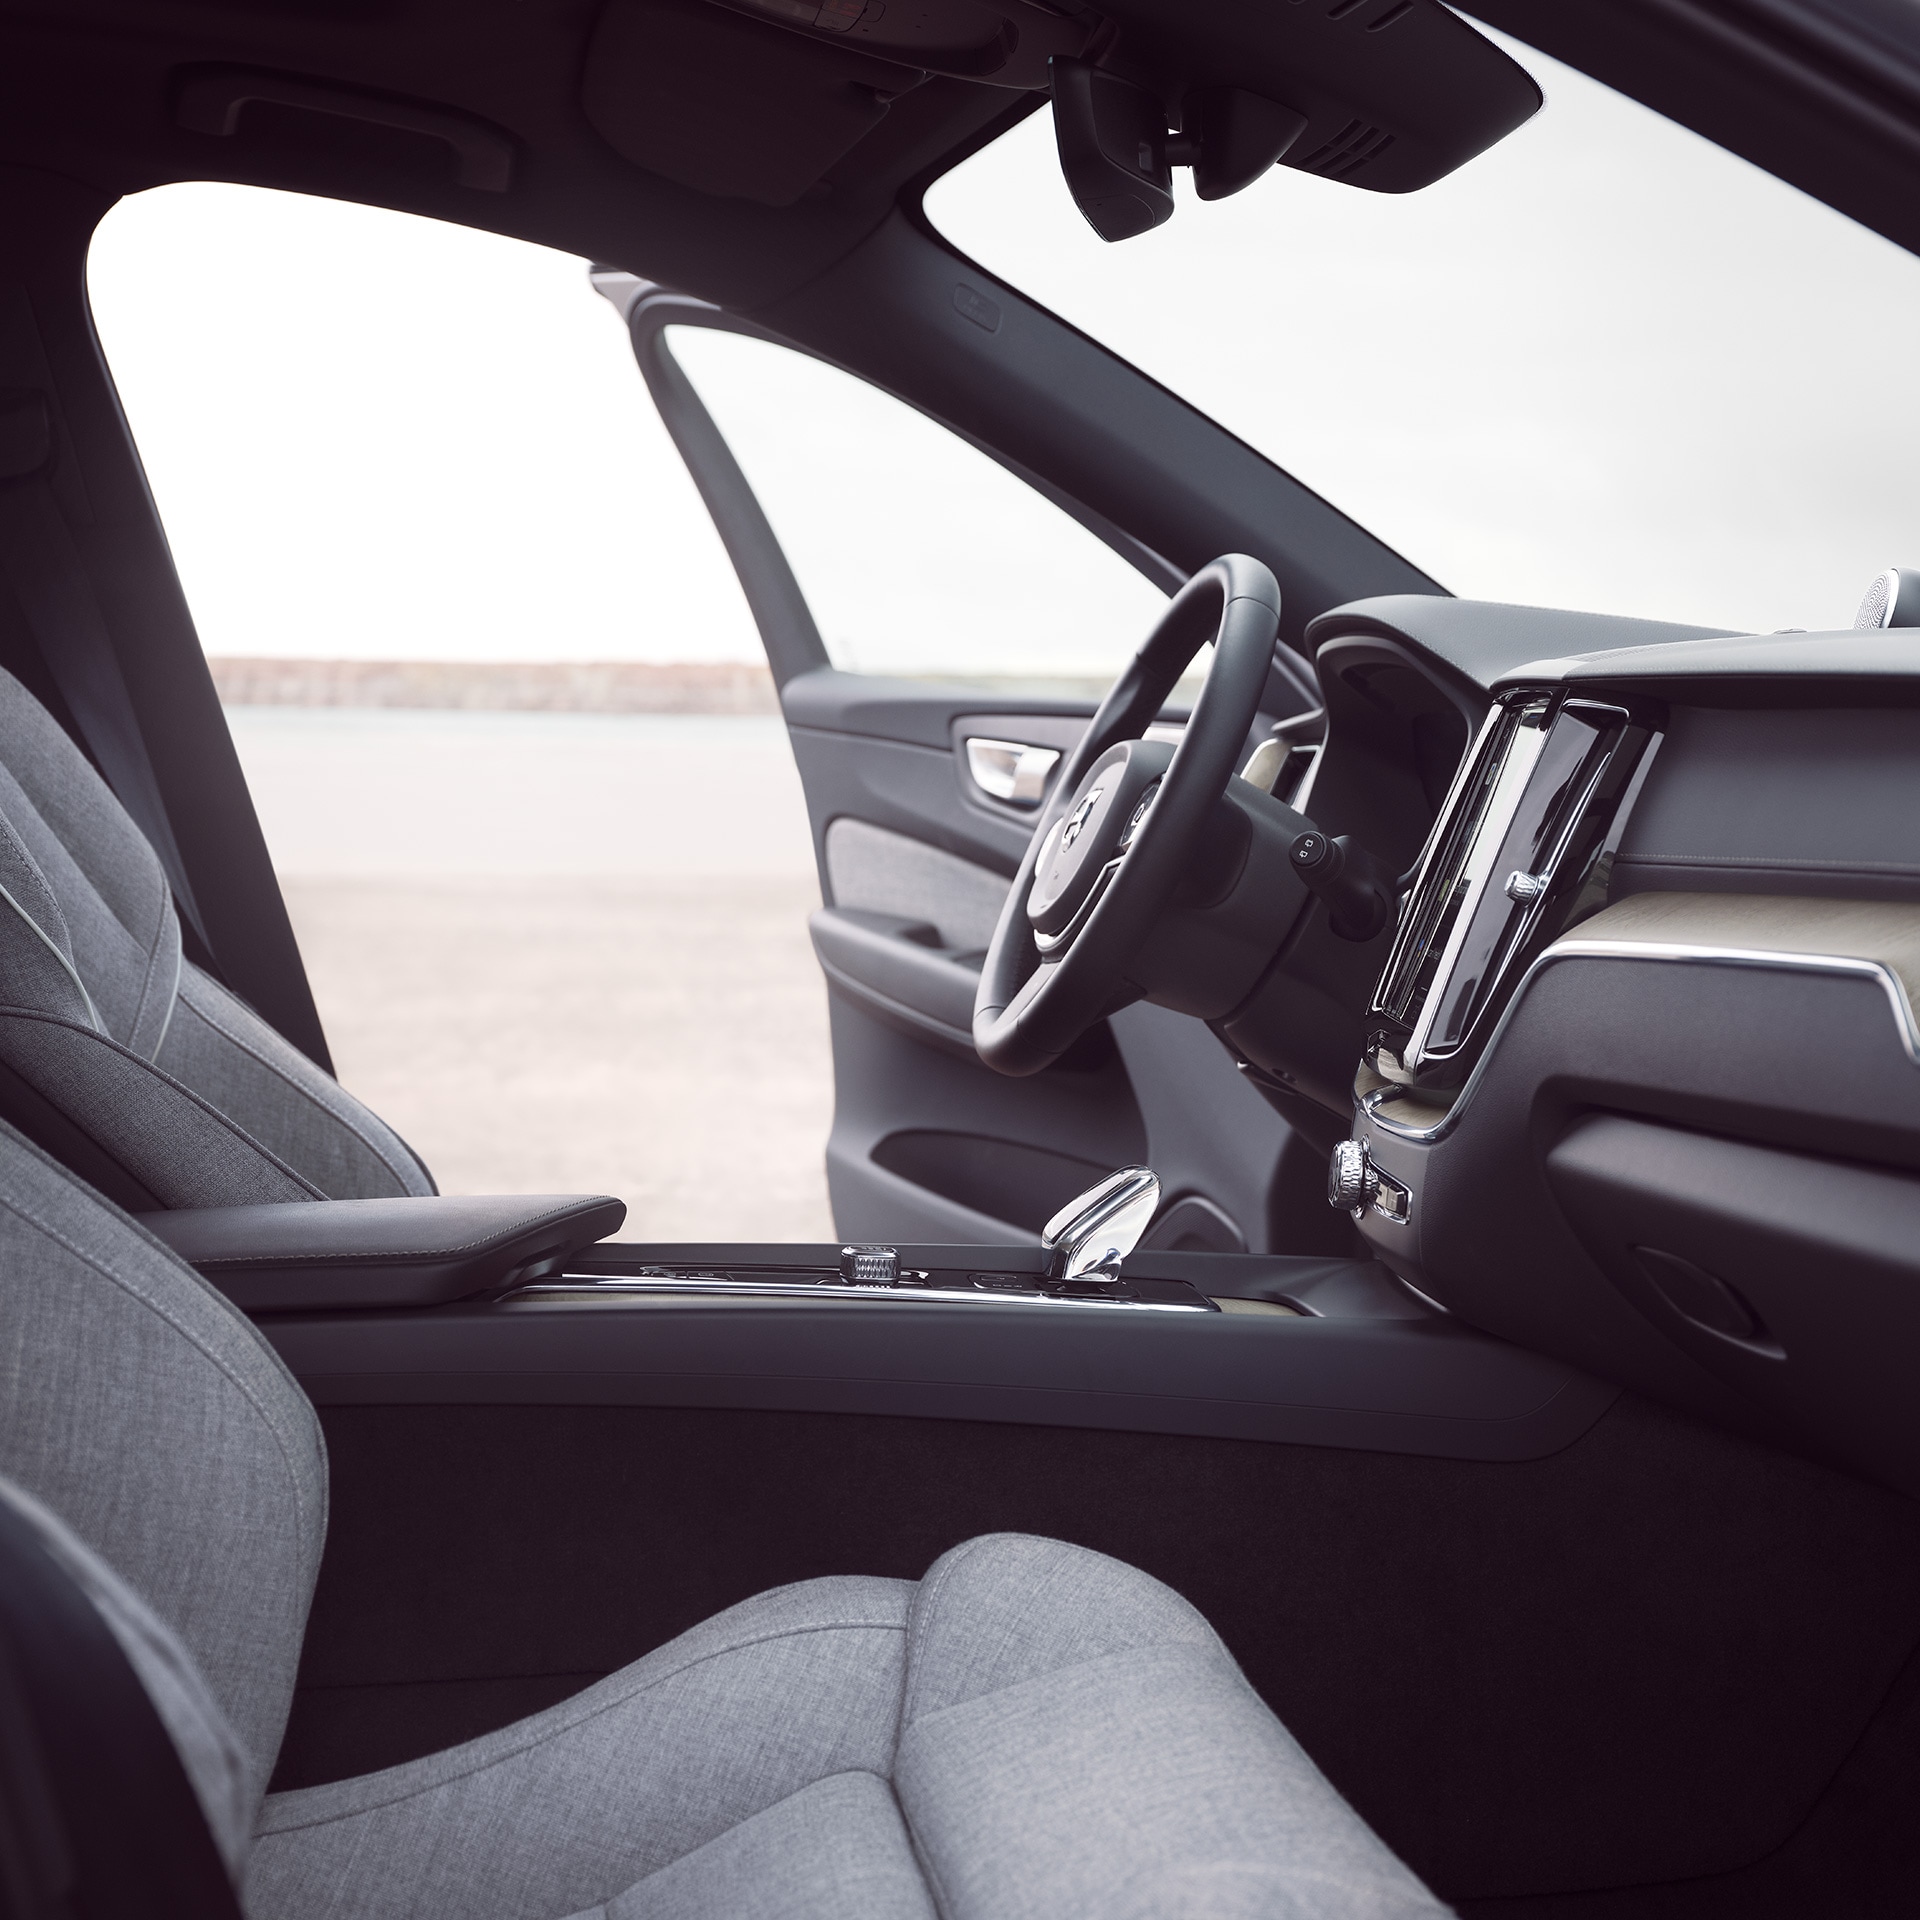 Οι εμπρός εσωτερικοί χώροι ενός Volvo XC60 Recharge με ανοιχτή την πόρτα του οδηγού.